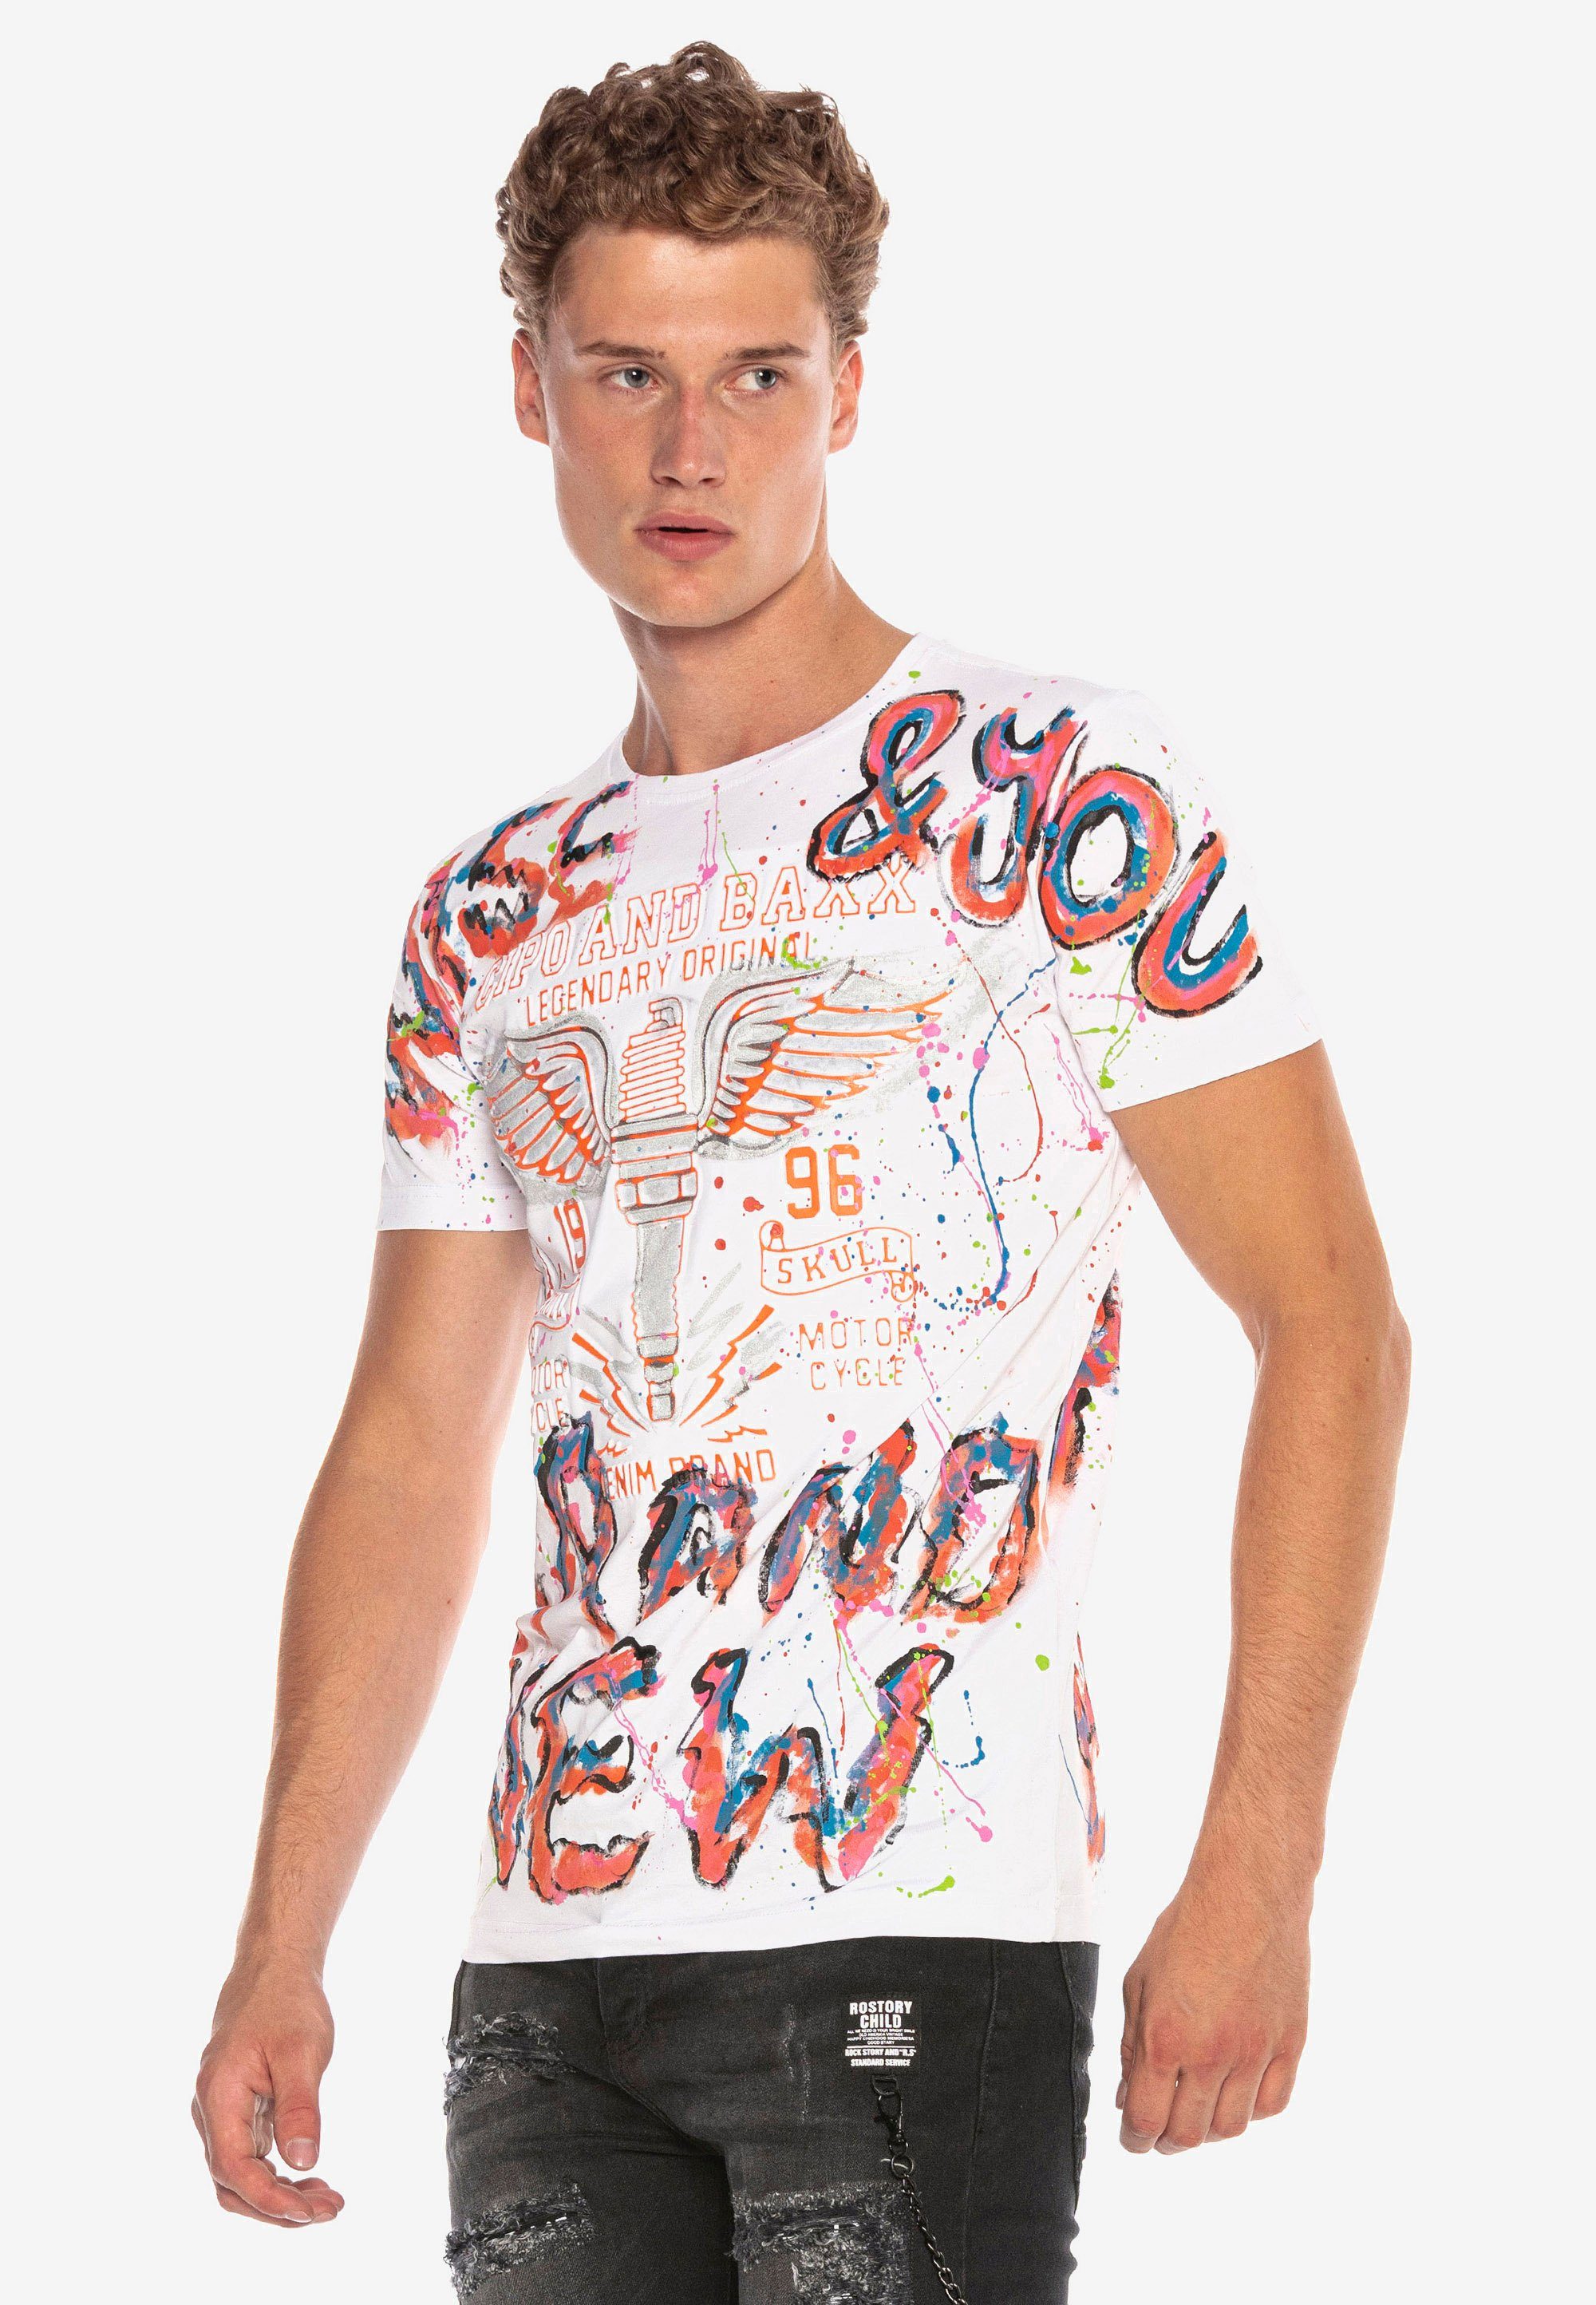 & trendigen im Cipo Handpaint-Design T-Shirt Baxx